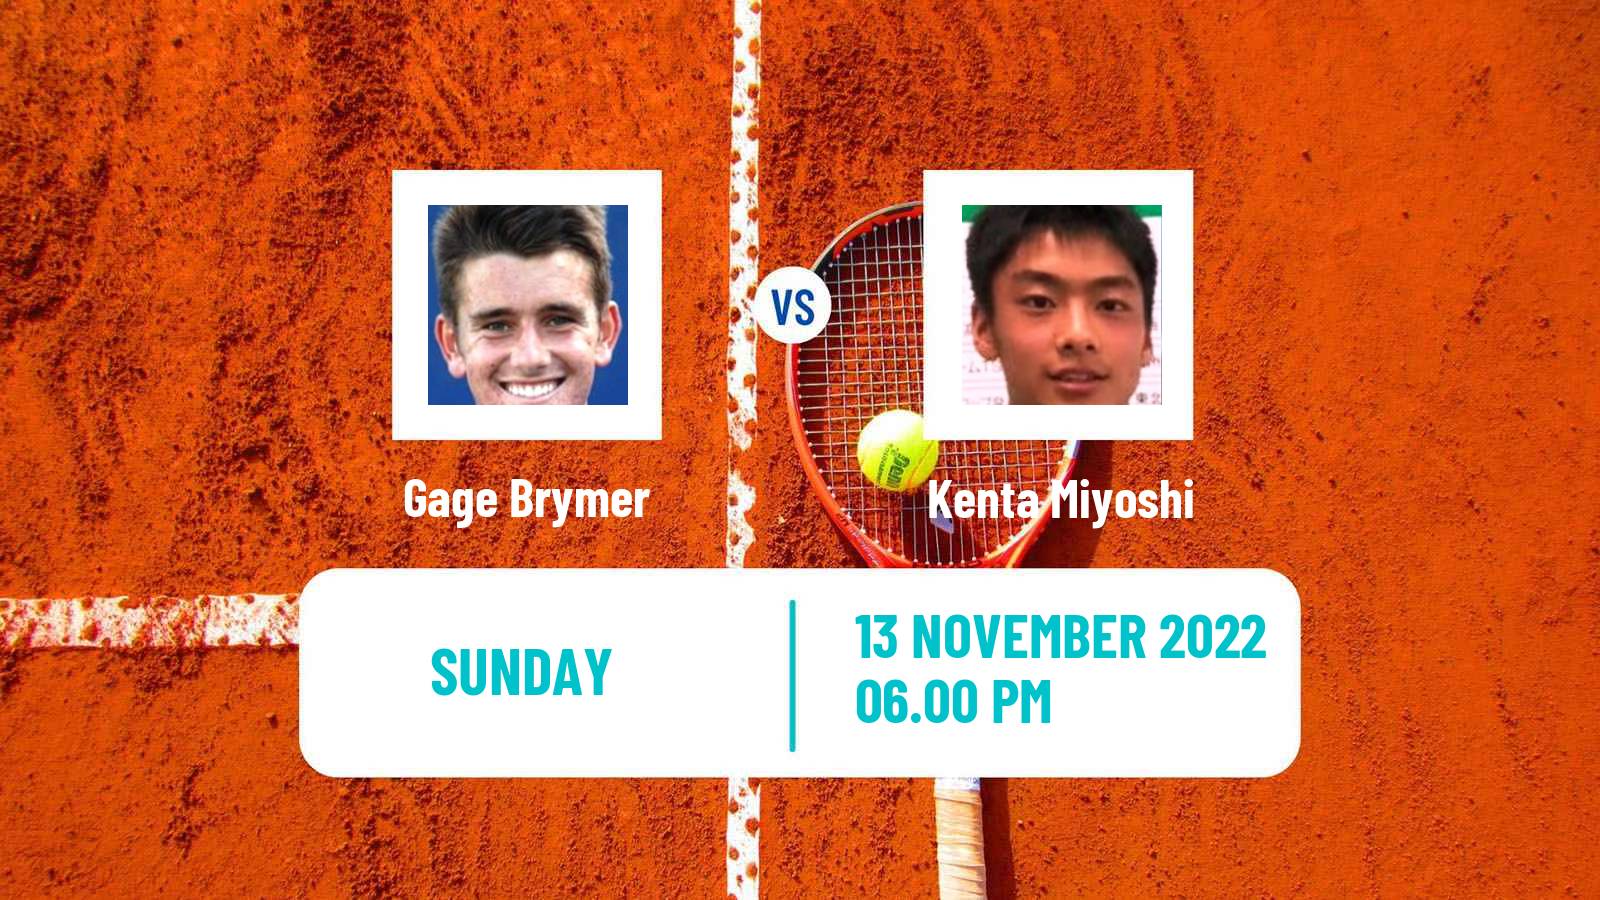 Tennis ATP Challenger Gage Brymer - Kenta Miyoshi